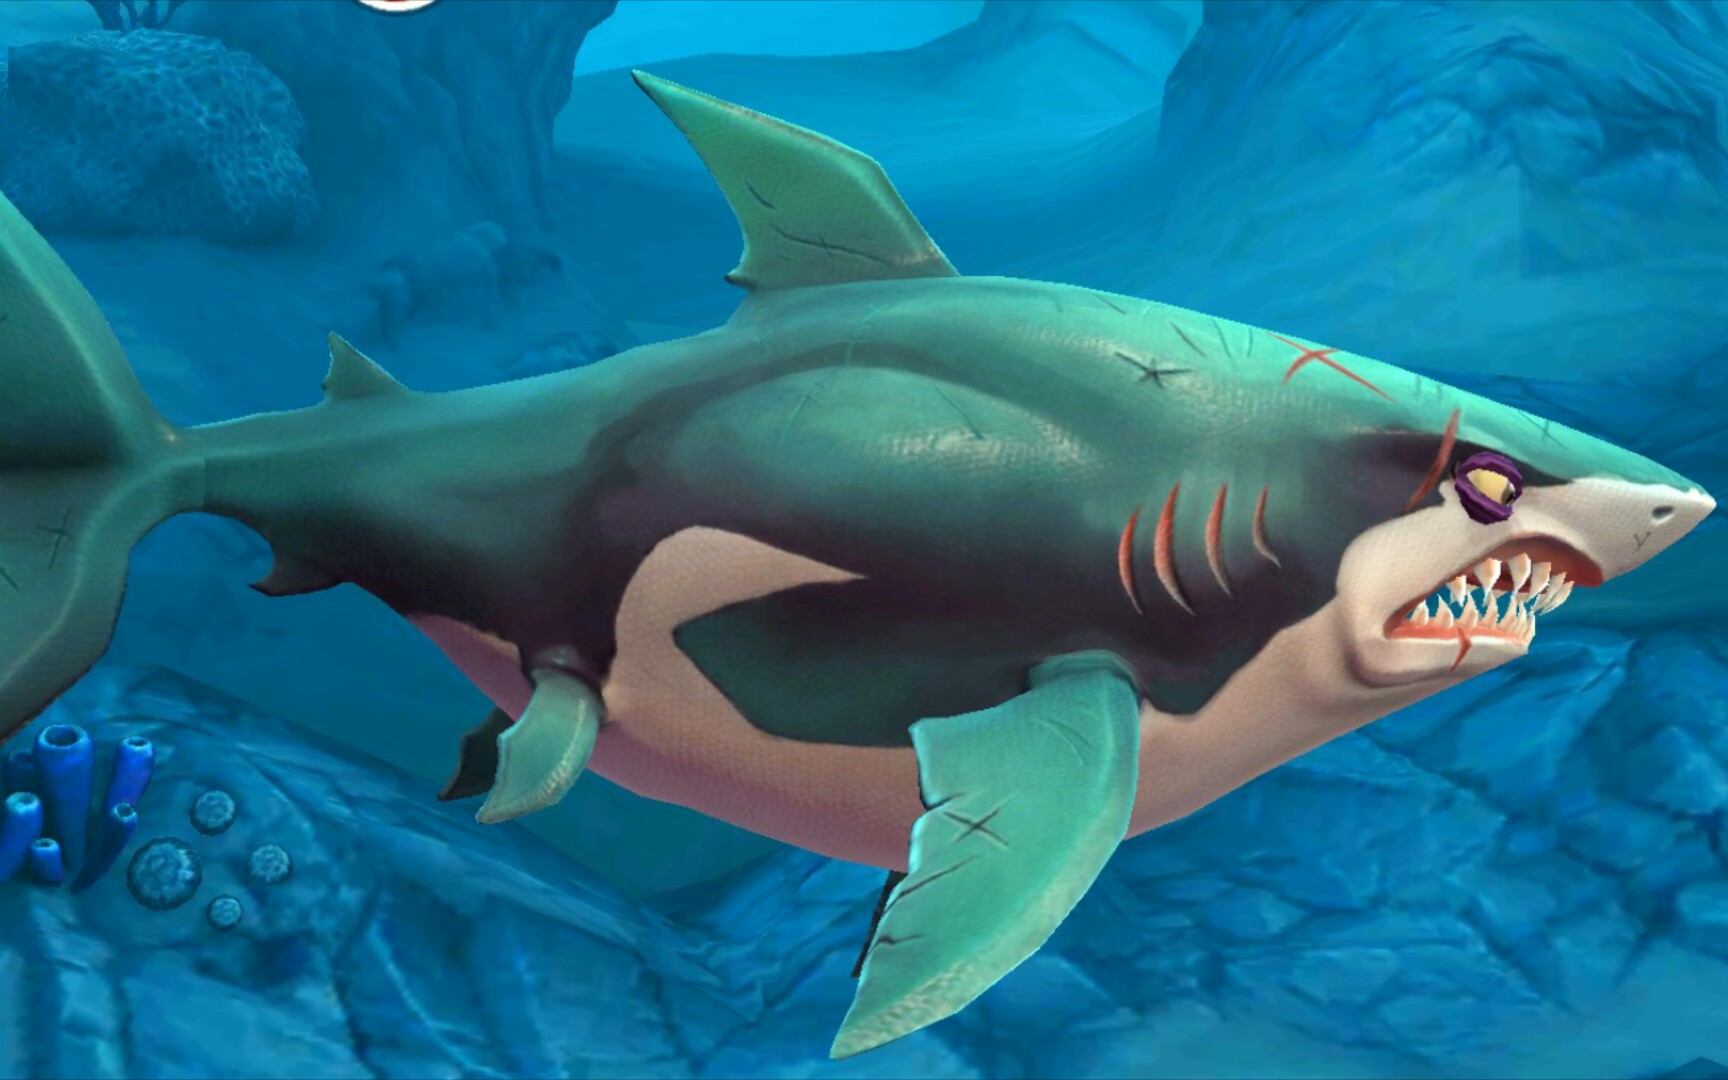 饥饿鲨世界boss图片